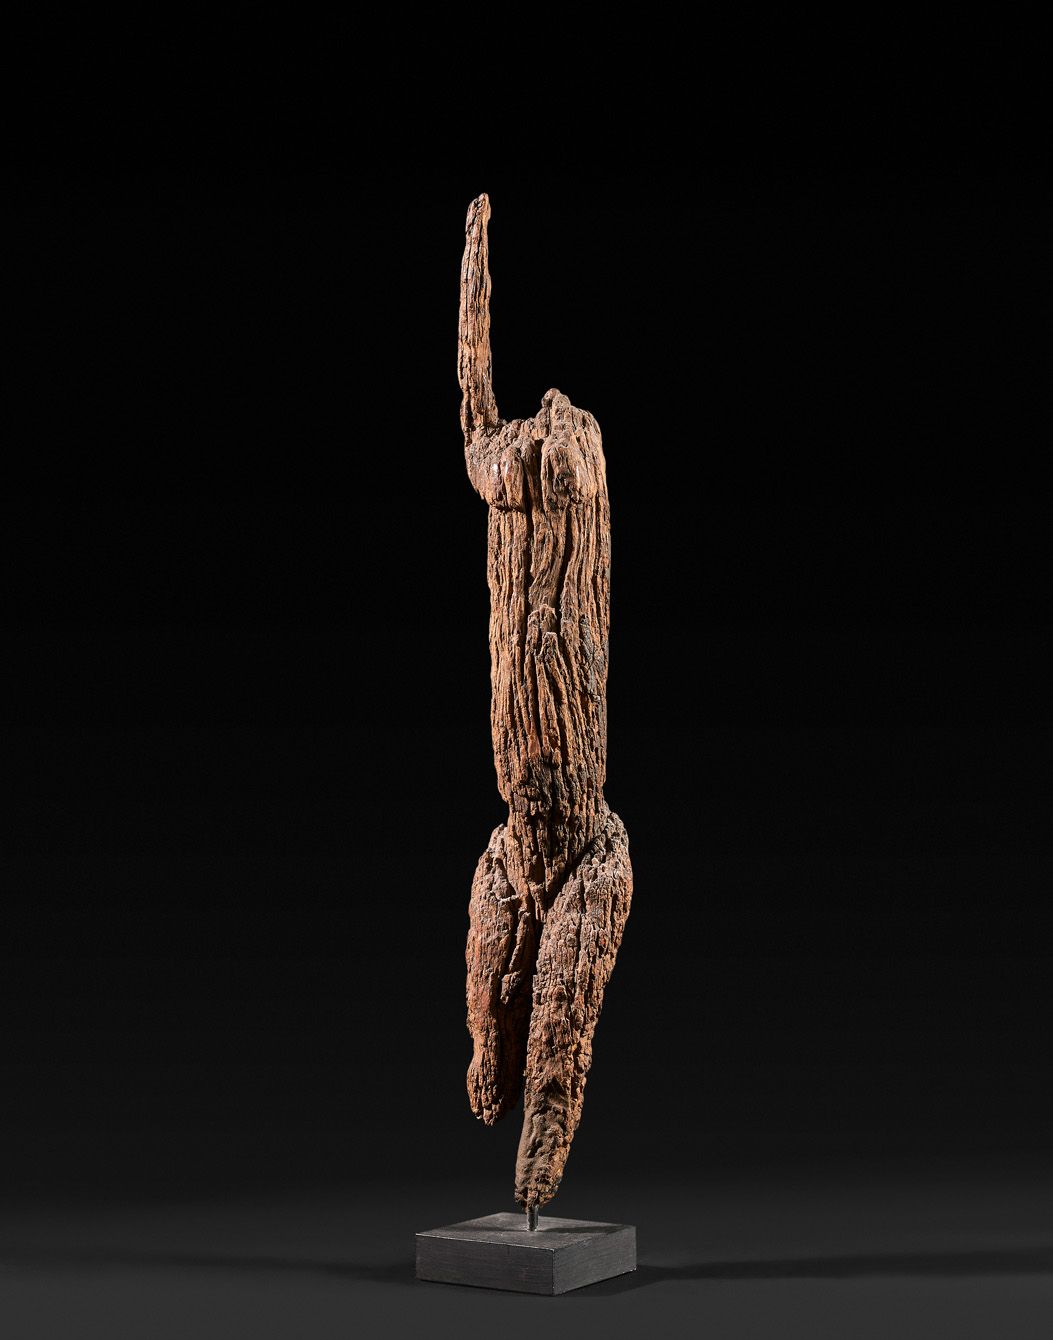 Null 无头的人物，举起手臂。

带有非常古老的铜锈的木材。

多贡人。马里。

高度：47厘米